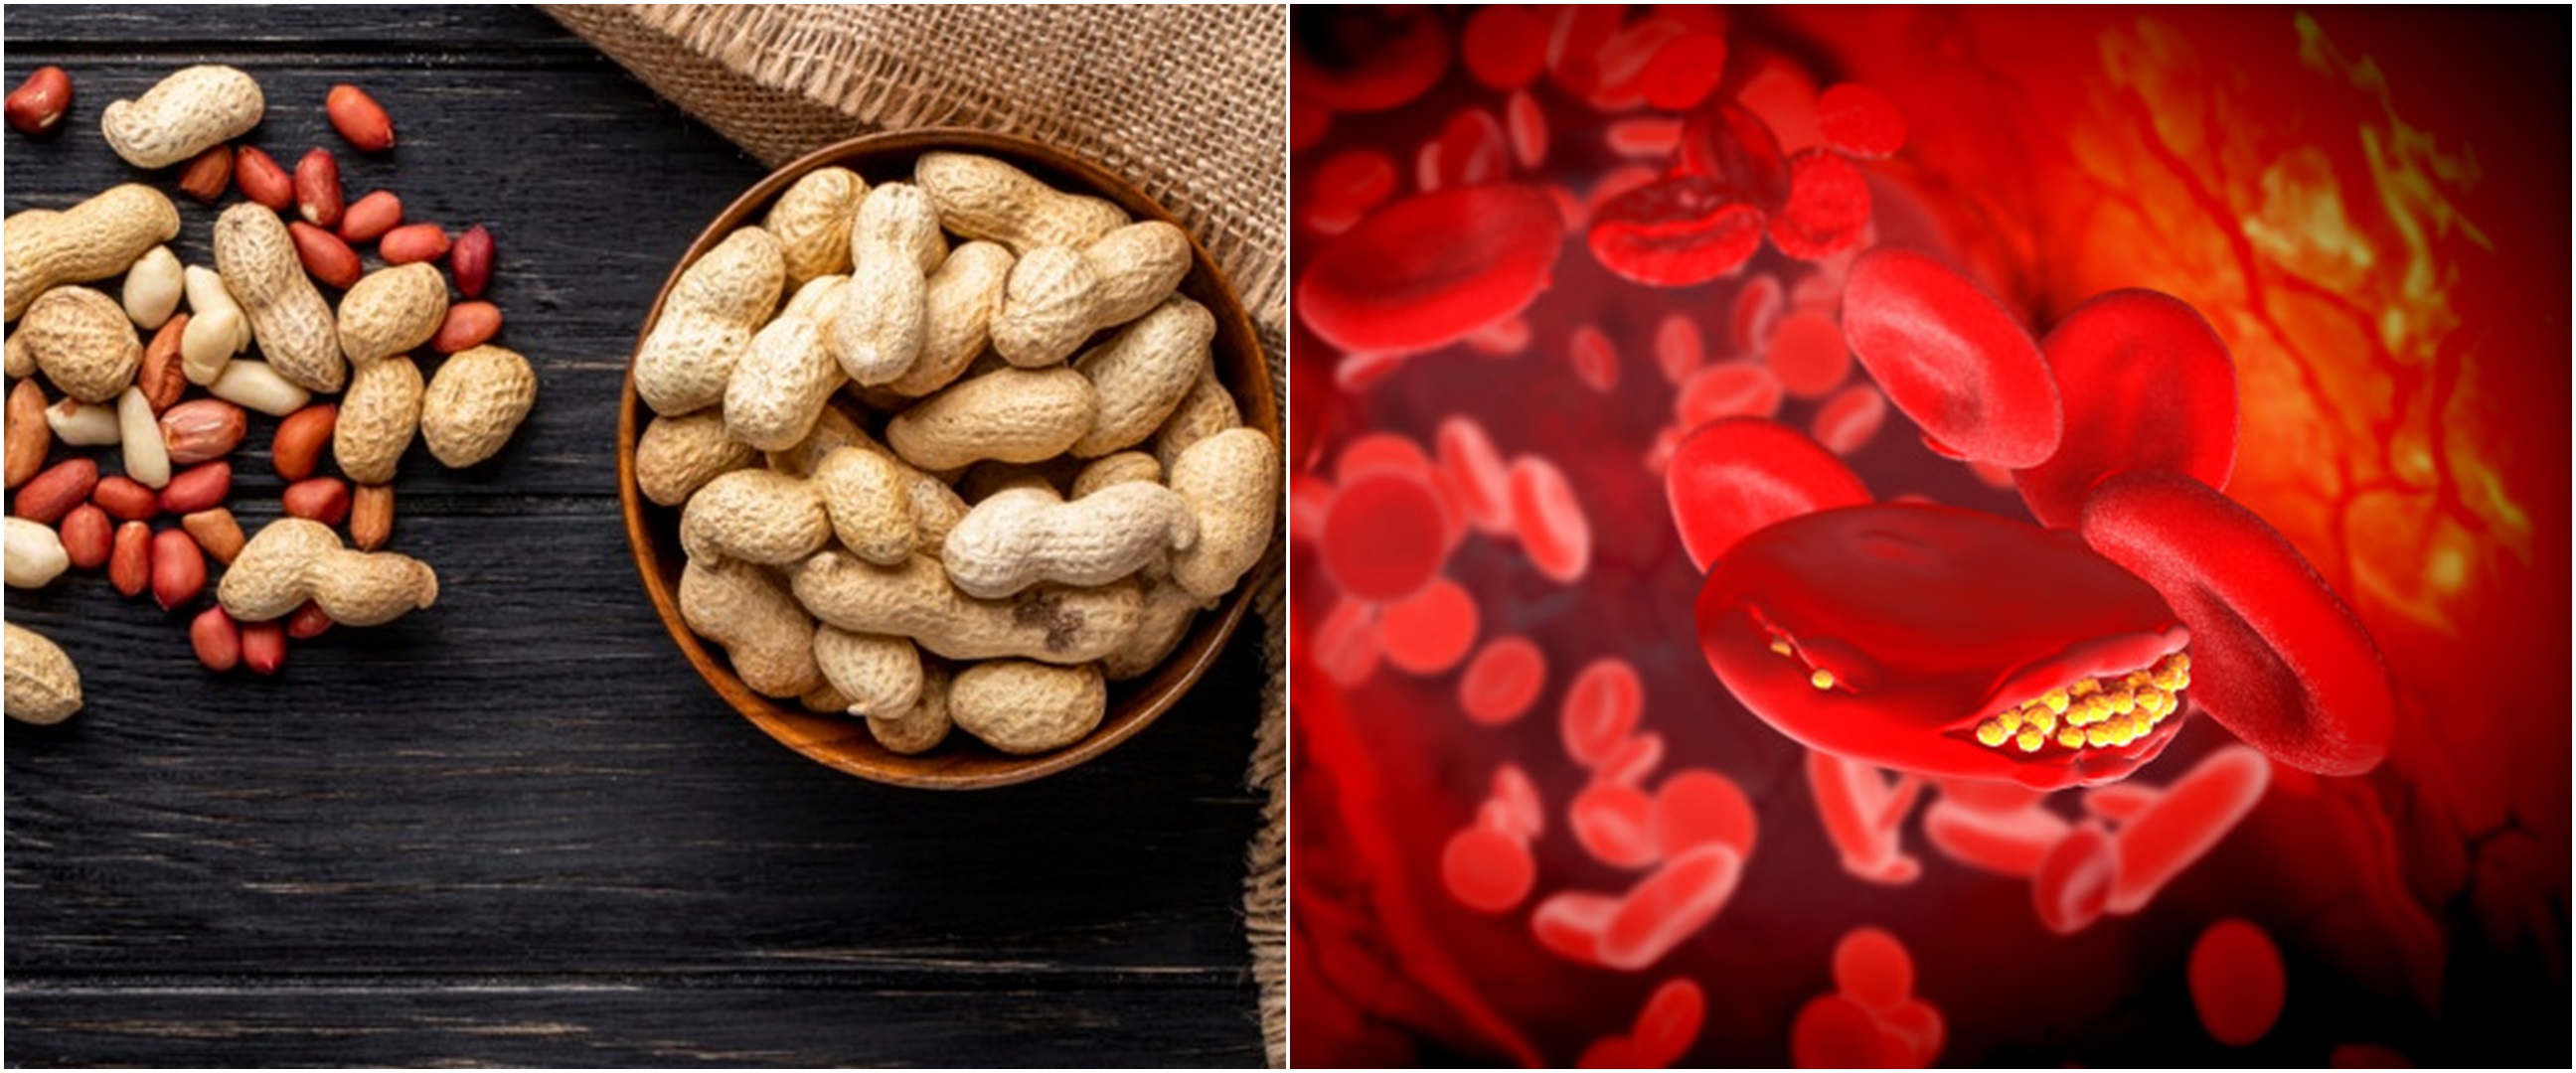 8 Manfaat kacang tanah untuk kesehatan, menurunkan kolesterol